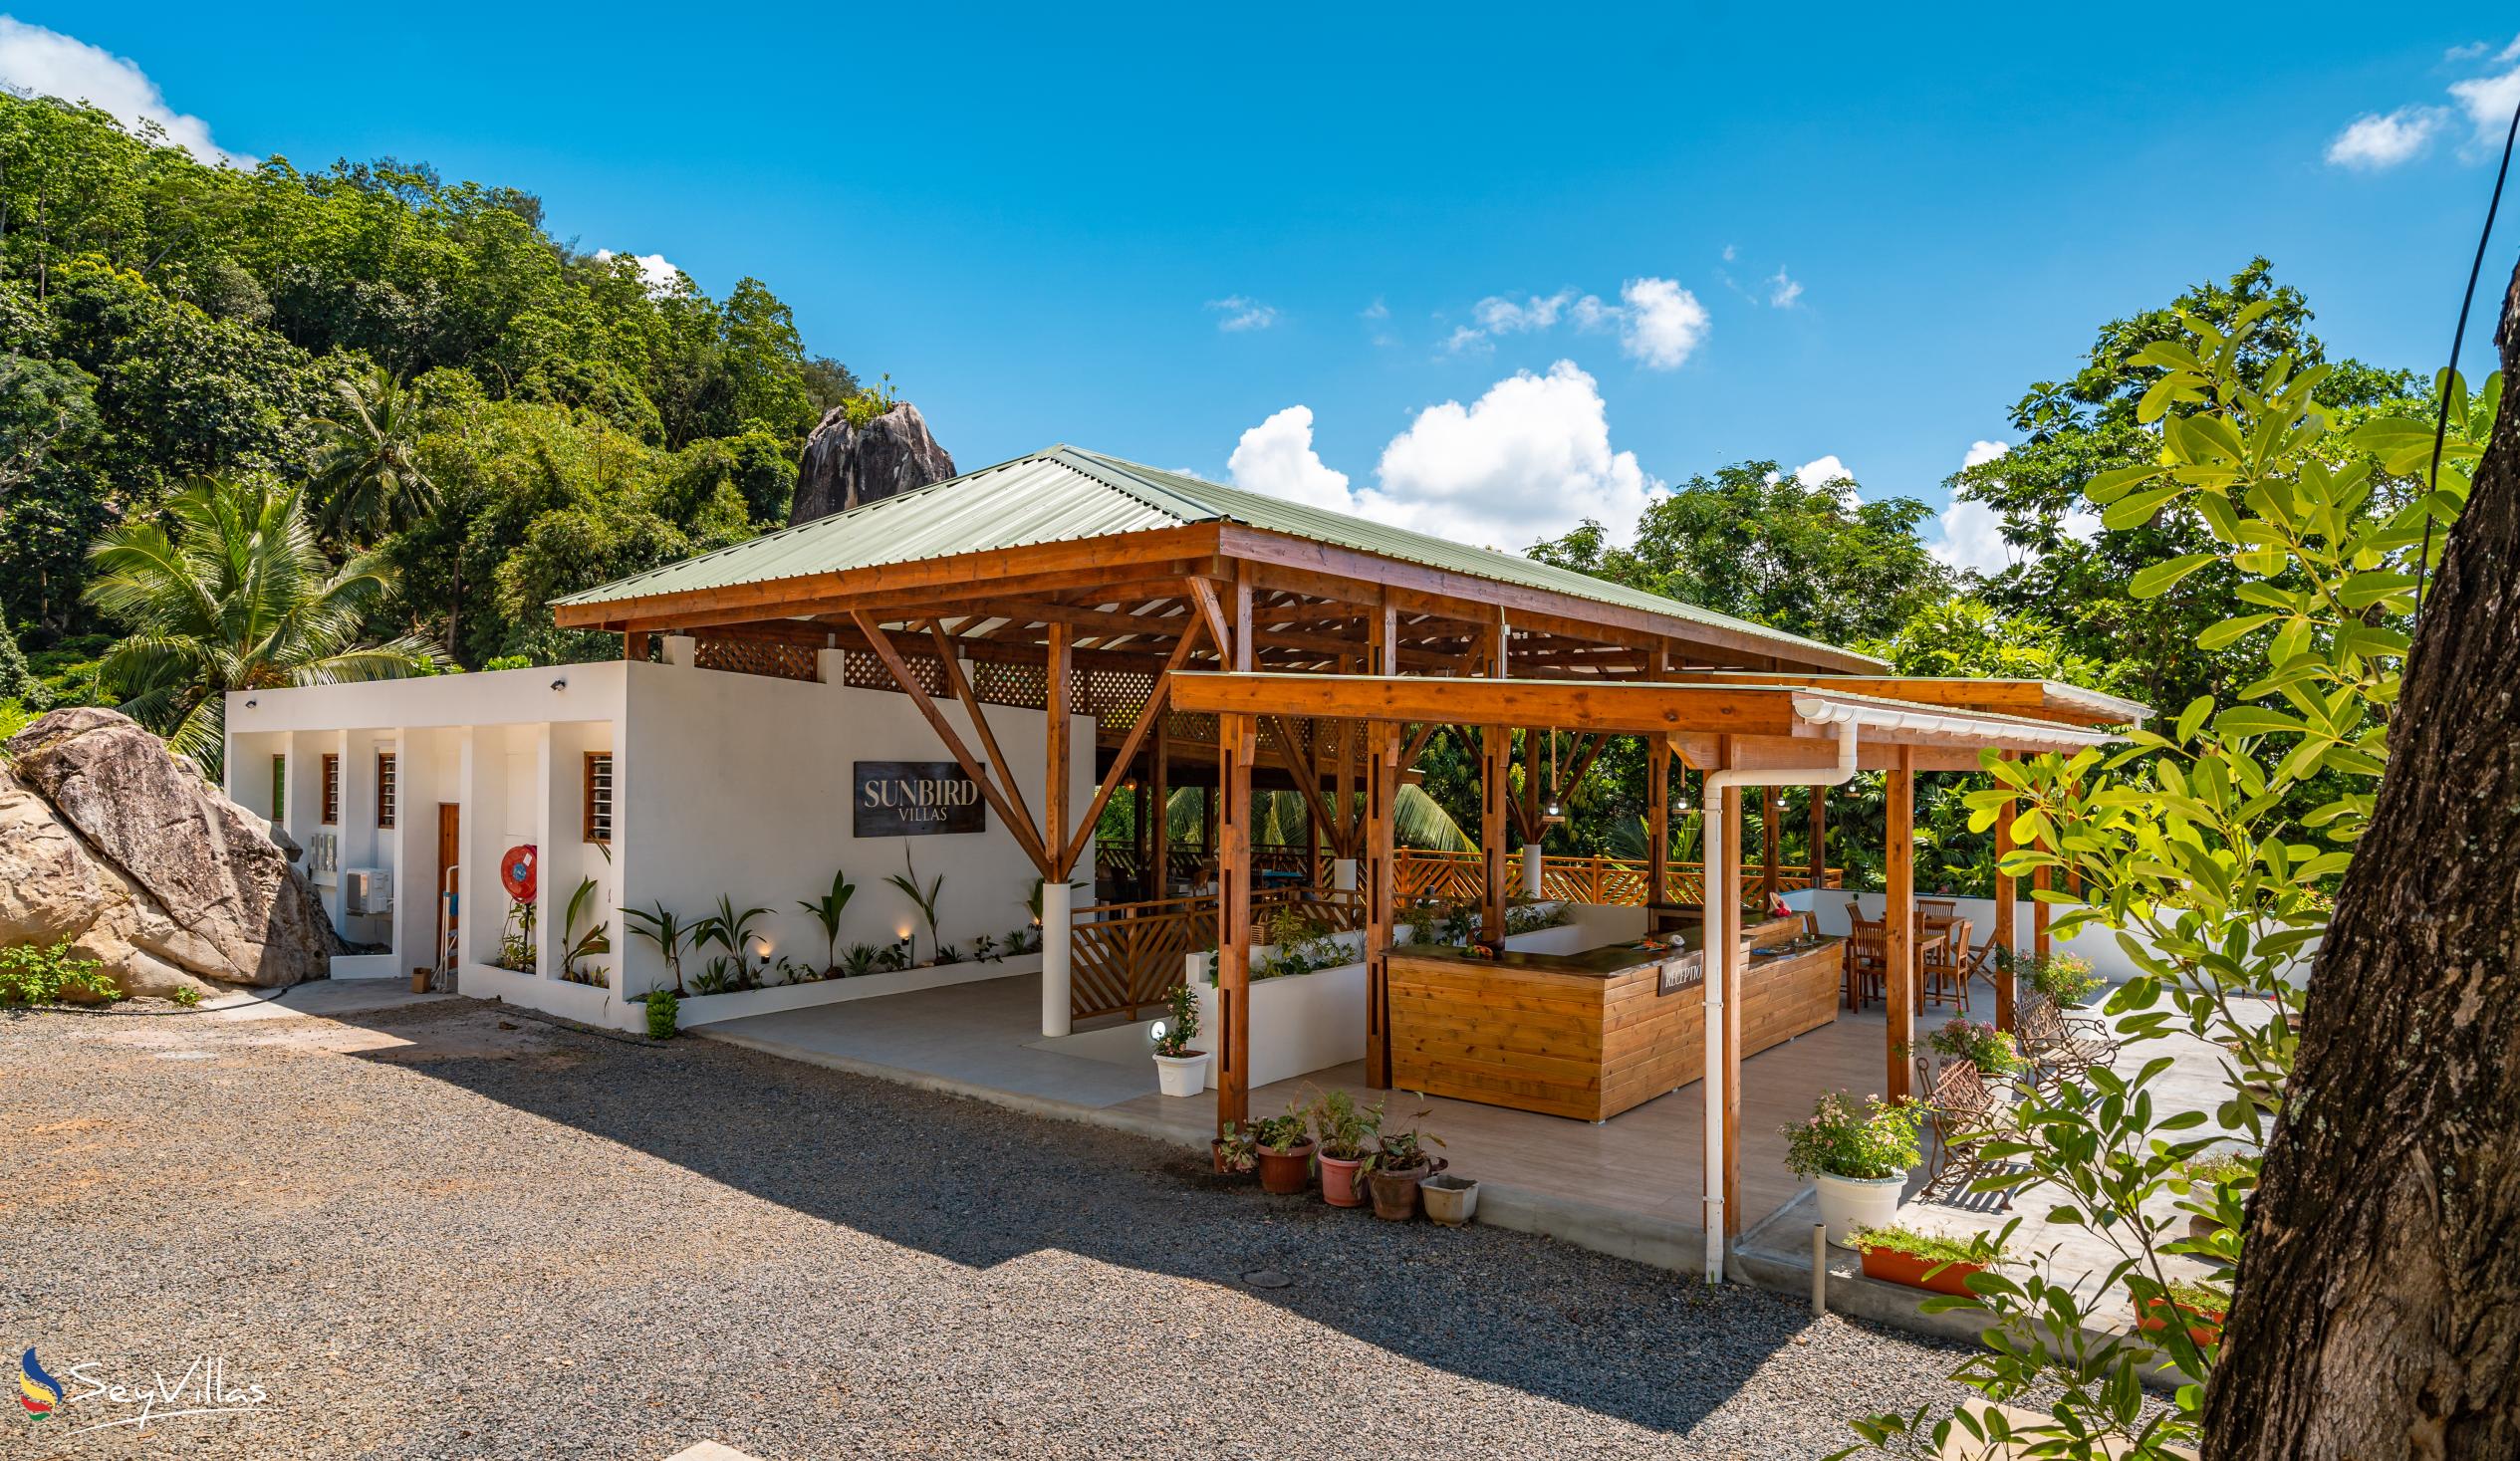 Foto 9: Sunbird Villas - Aussenbereich - Mahé (Seychellen)